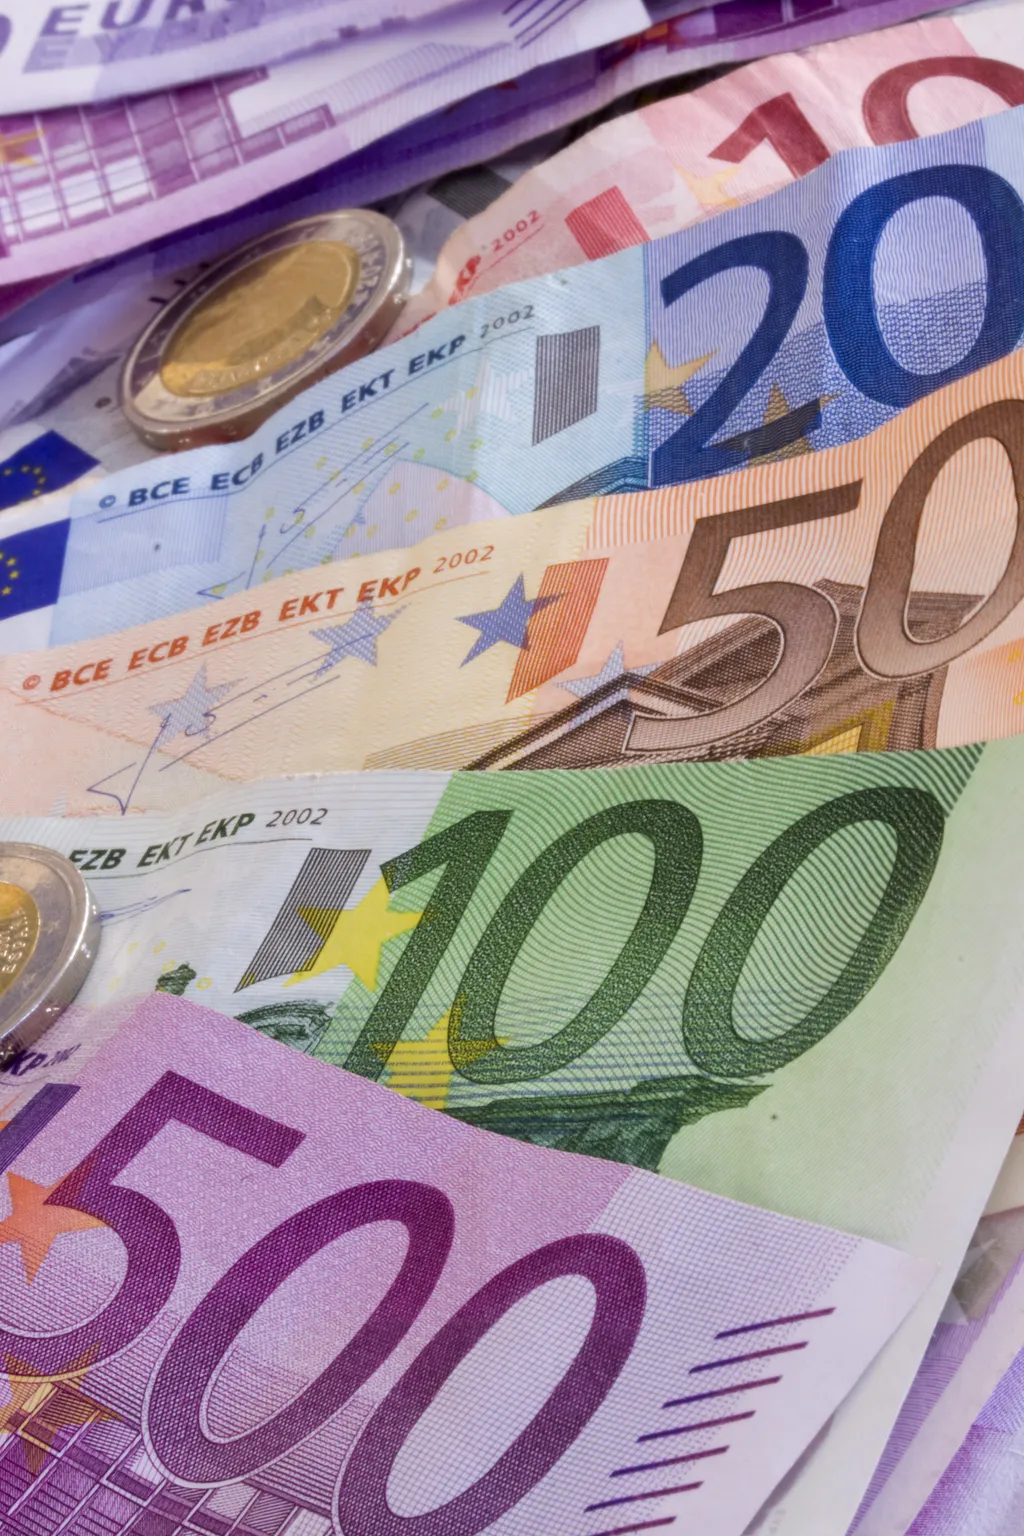 Euro income,spain,euro,hundred,fifty,germany,isolated,tourism,commerc
fizetőeszköz pénz Írország 